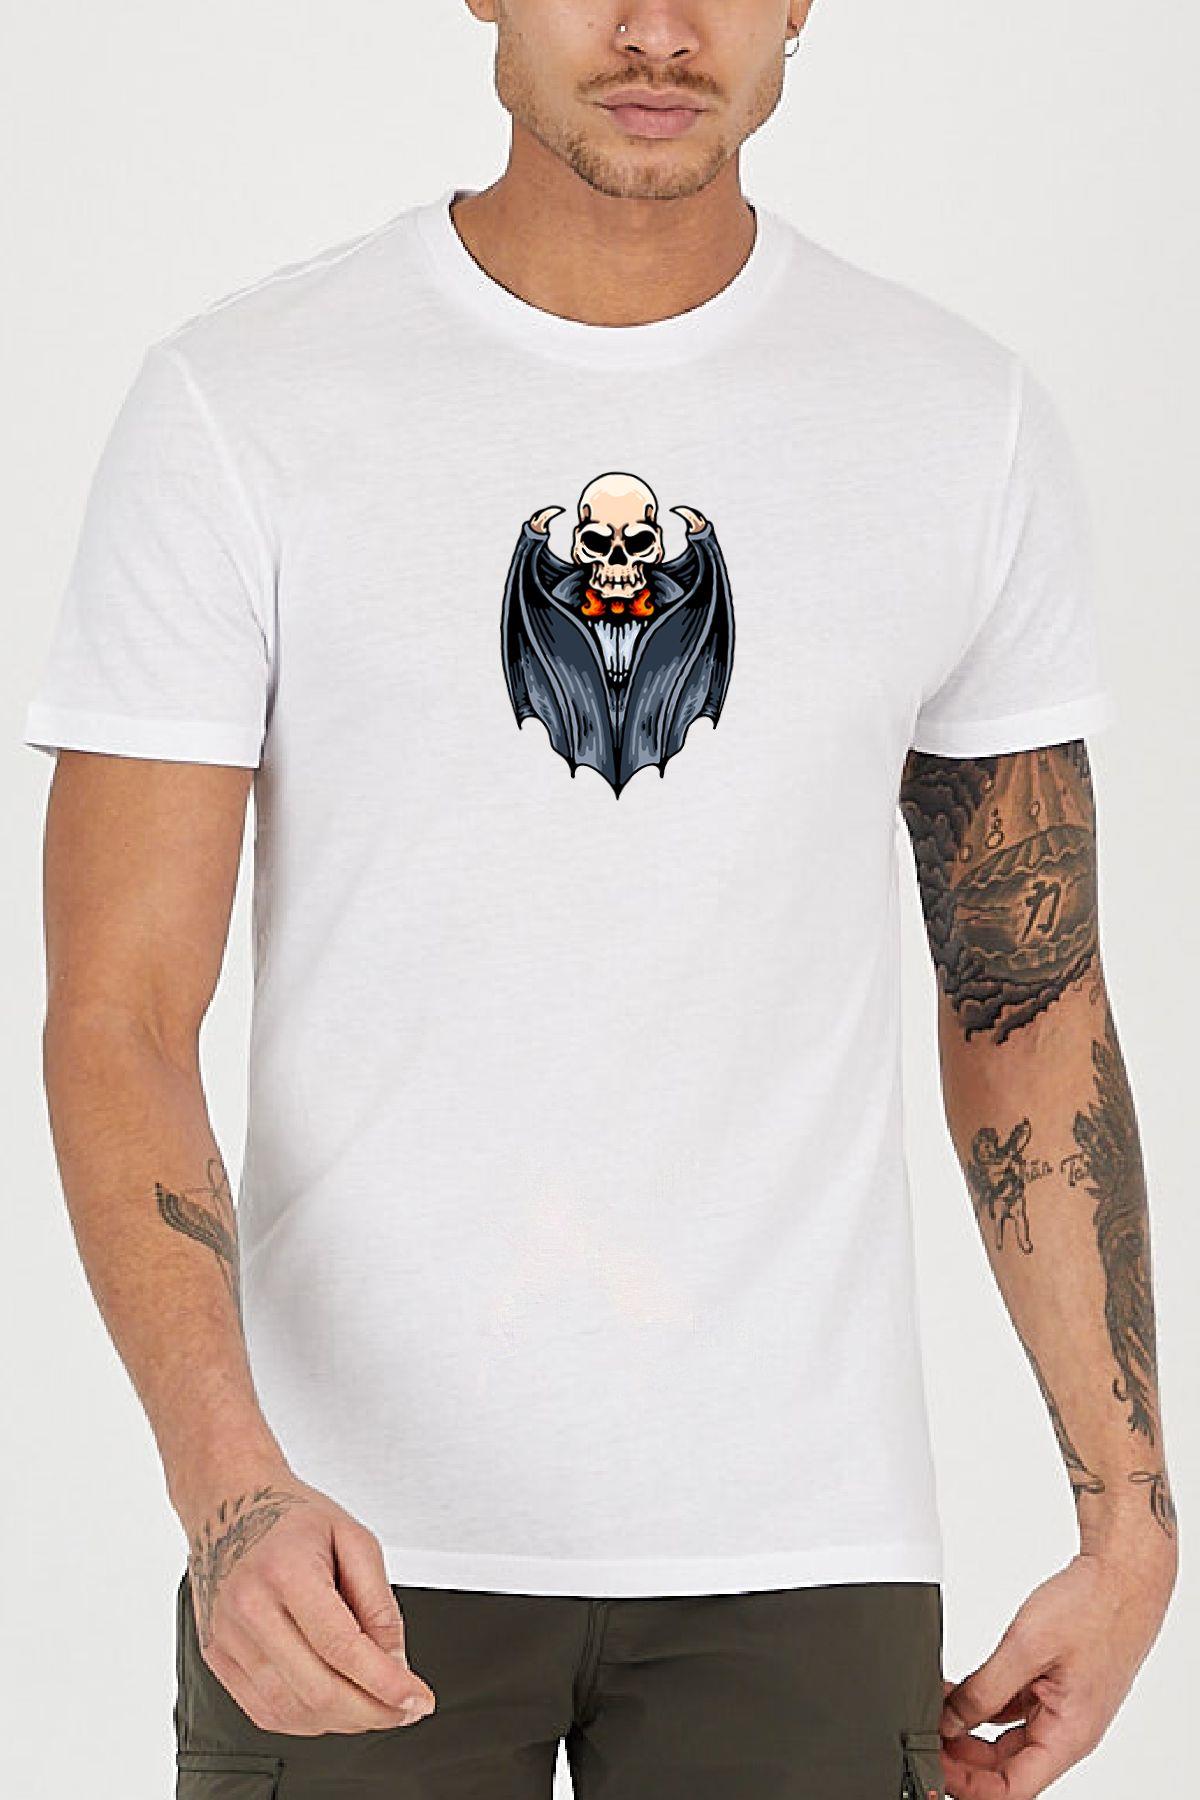 Skeleton bat printed Crew Neck men's t -shirt